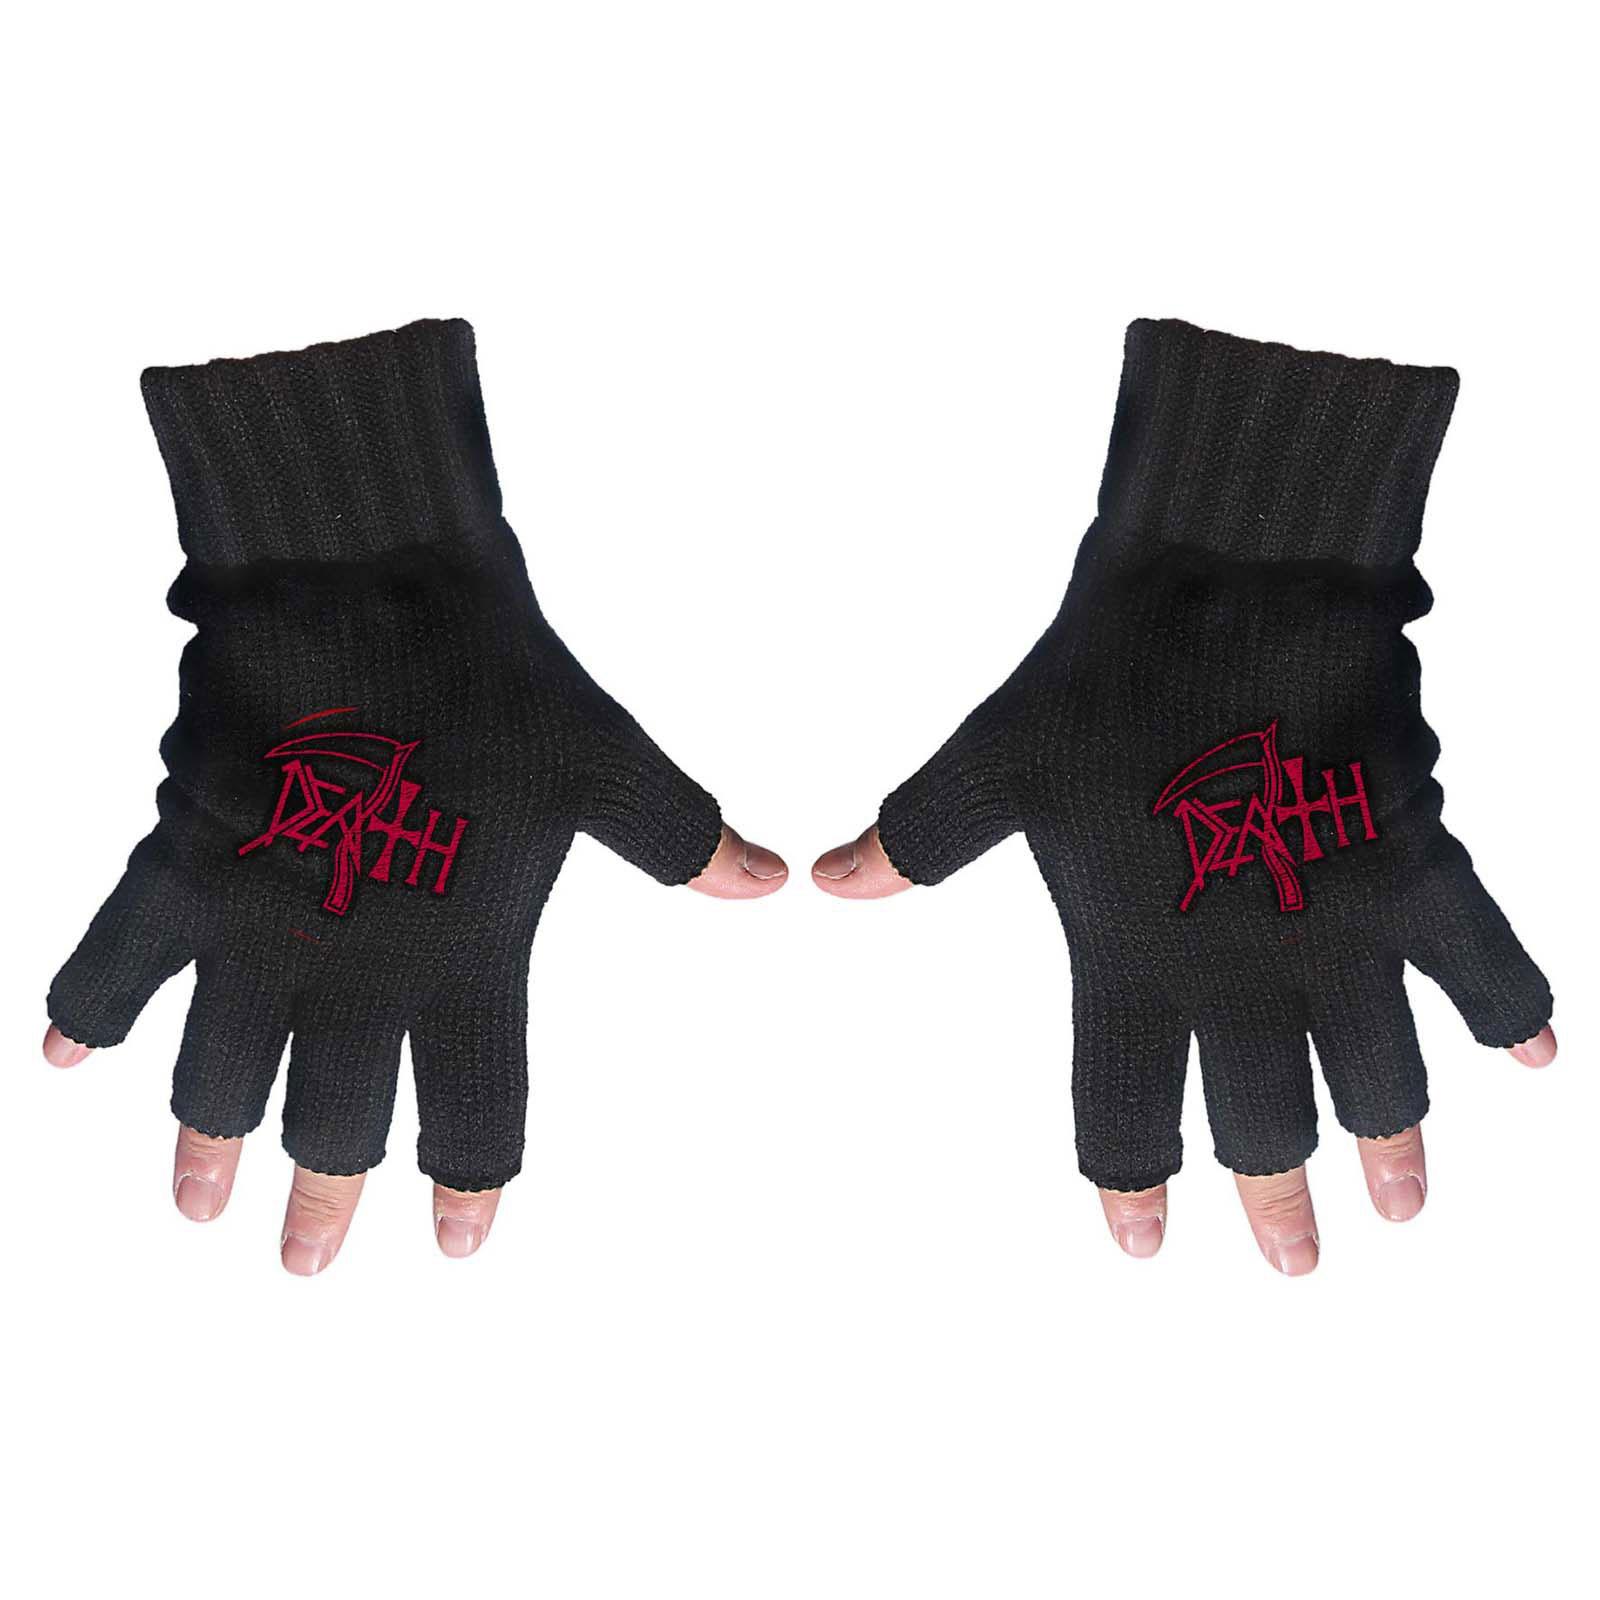 (デス) Death オフィシャル商品 ユニセックス ロゴ 手袋 フィンガーレス グローブ 【海外通販】